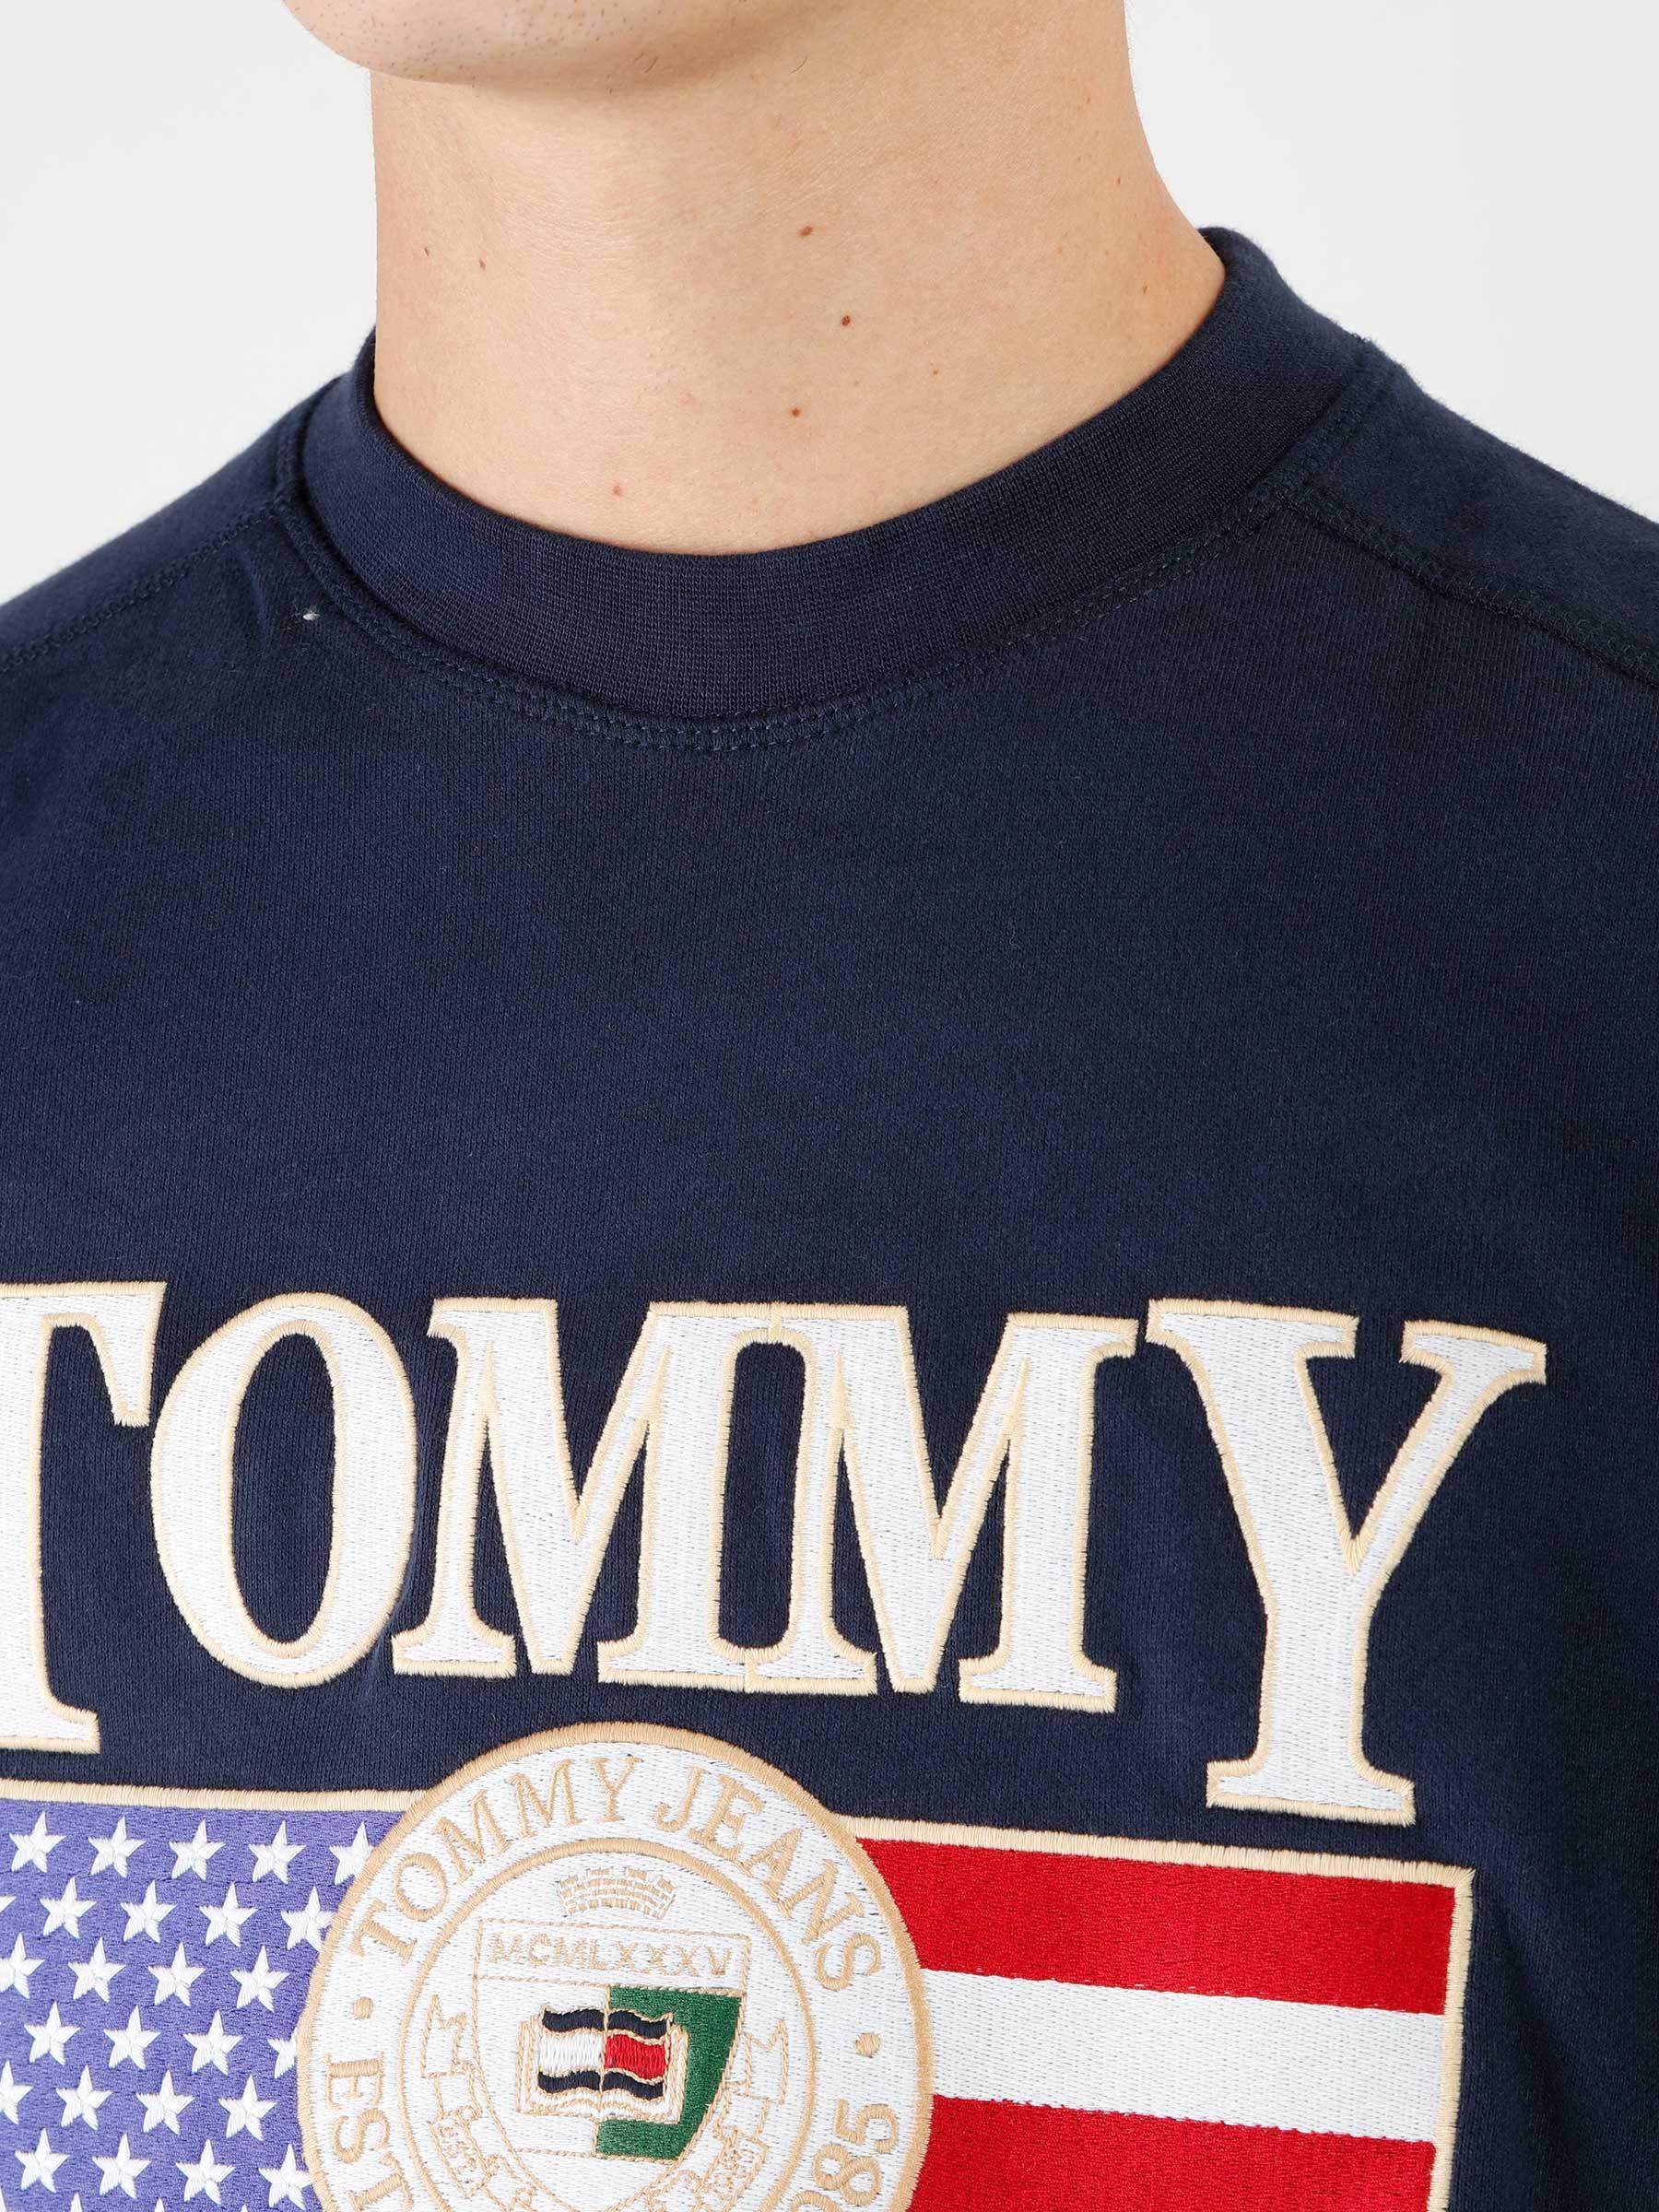 Twilight - Crewneck TJ Luxe TJM Freshcotton Boxy Navy Jeans Tommy